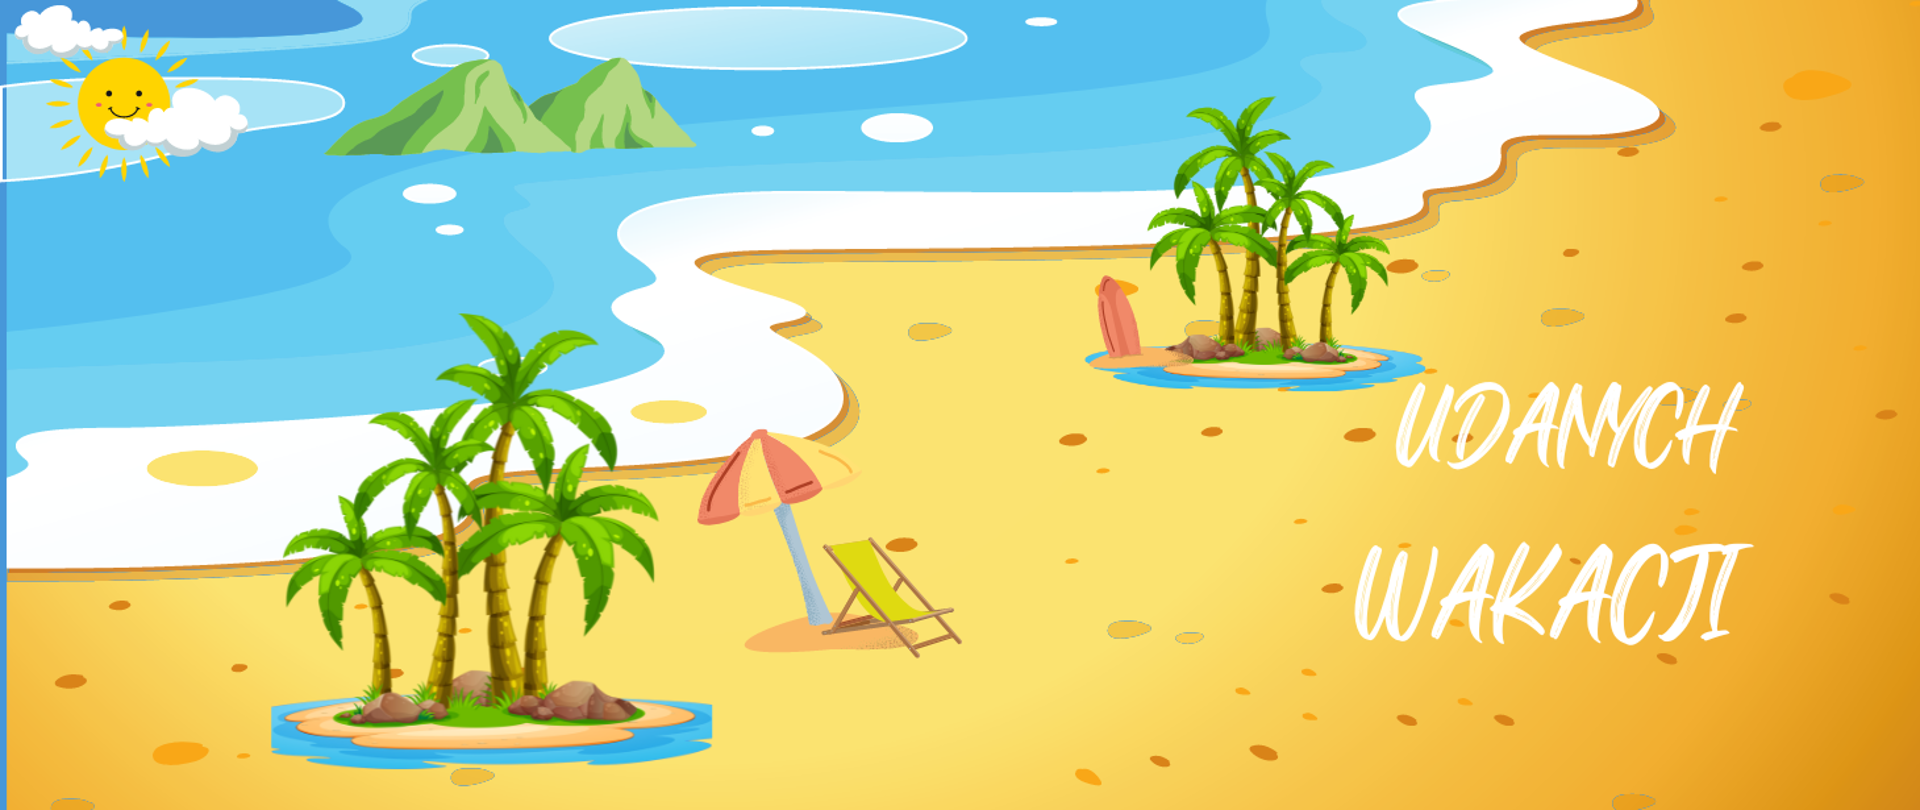 Obrazek przedstawiający plażę i morze - po przekątnej lewa część przedstawia morze, a prawa plażę. W górnym lewym rogu słońce z dwiema chmurkami na tle morza. Na morzu dwie zielone góry. Na dole z lewej strony widoczne cztery palmy, obok leżak z parasolem, dalej kolejne cztery palmy i kawałek czerwonej deski surfingowej. Z prawej strony napis UDANYCH WAKACJI.